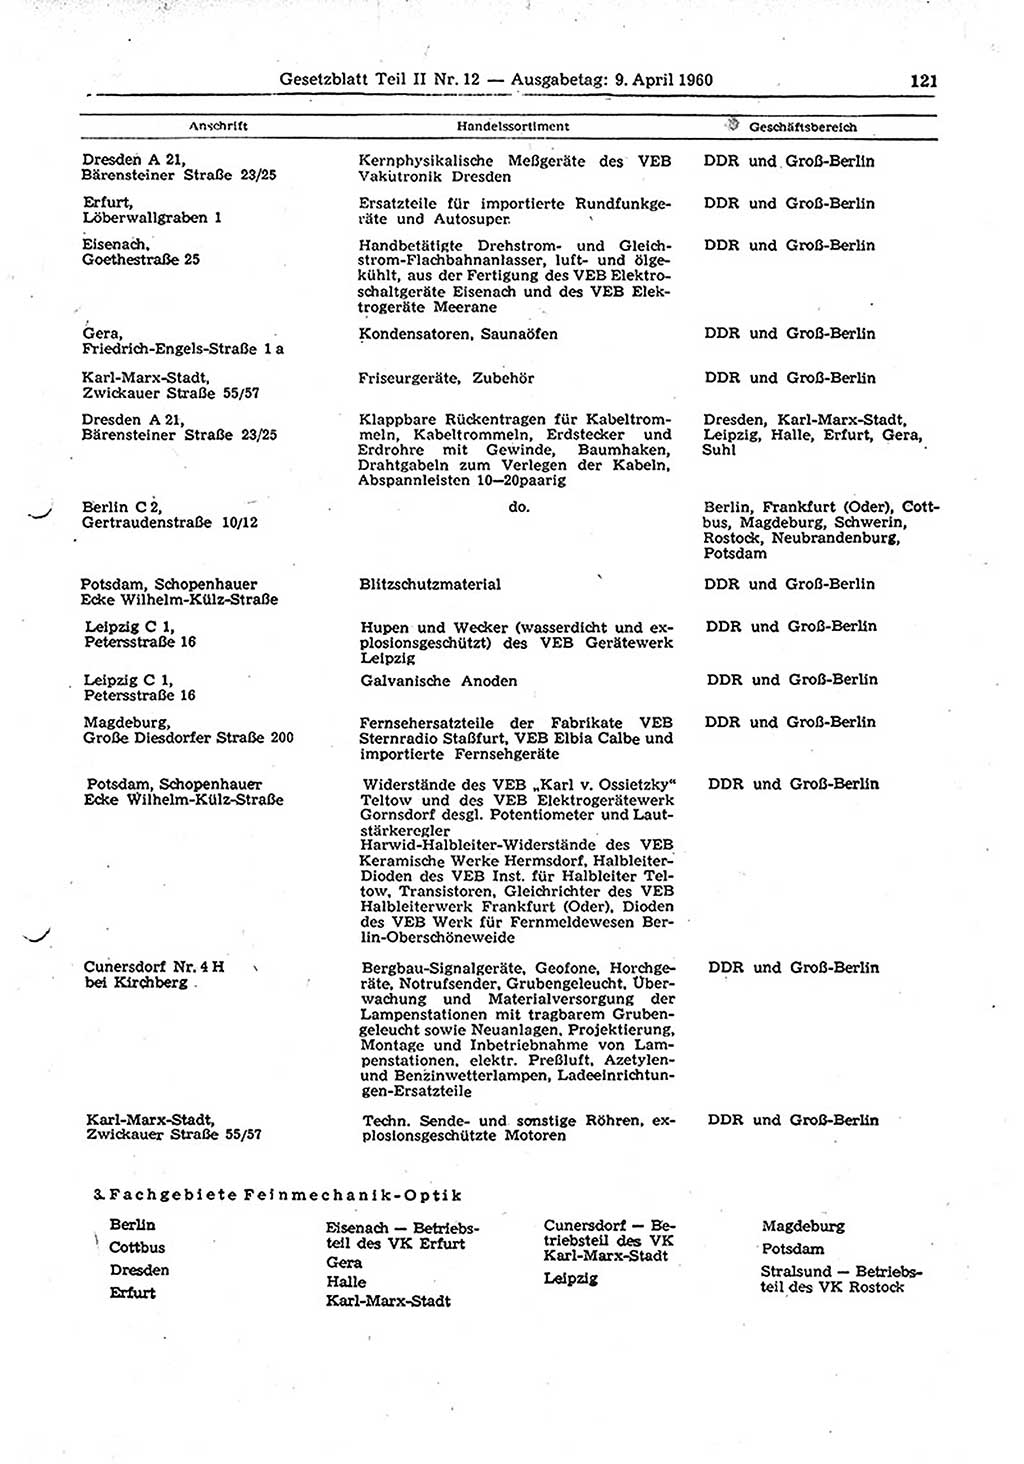 Gesetzblatt (GBl.) der Deutschen Demokratischen Republik (DDR) Teil ⅠⅠ 1960, Seite 121 (GBl. DDR ⅠⅠ 1960, S. 121)